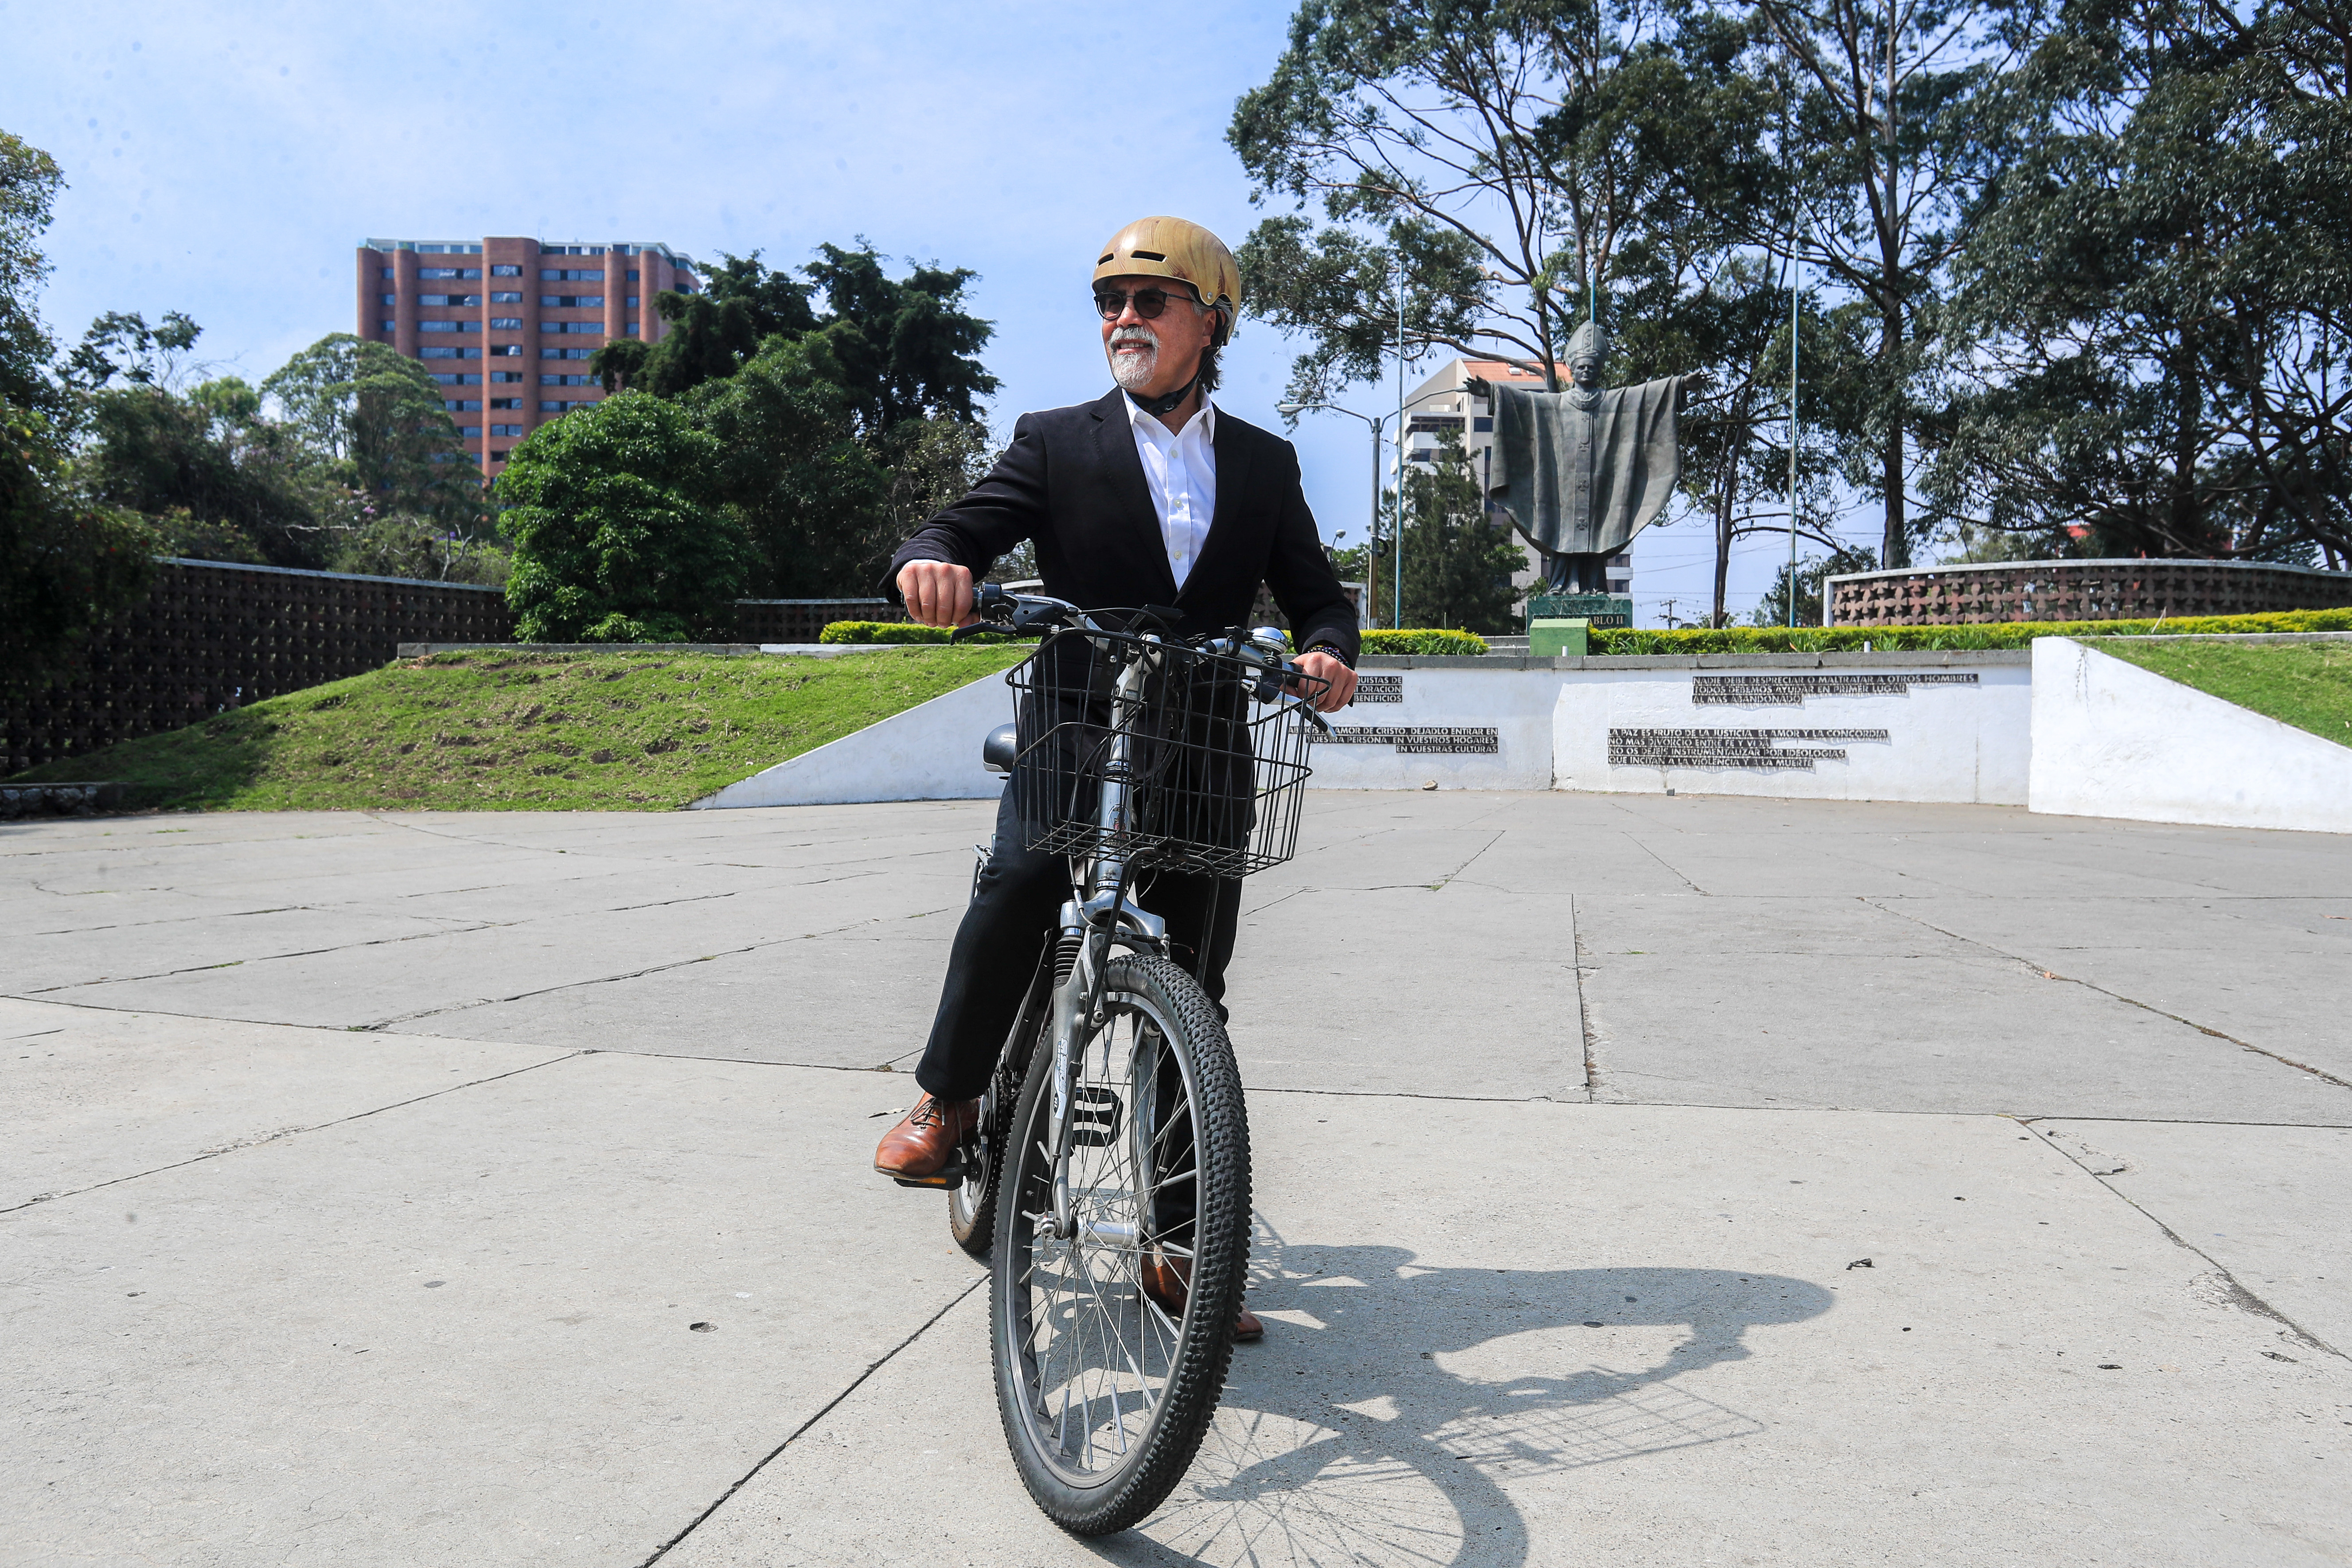 Durante la pandemia, más personas se animaron a usar la bicicleta como medio de transporte para ir a trabajar. (Foto Prensa Libre: Juan Diego González).